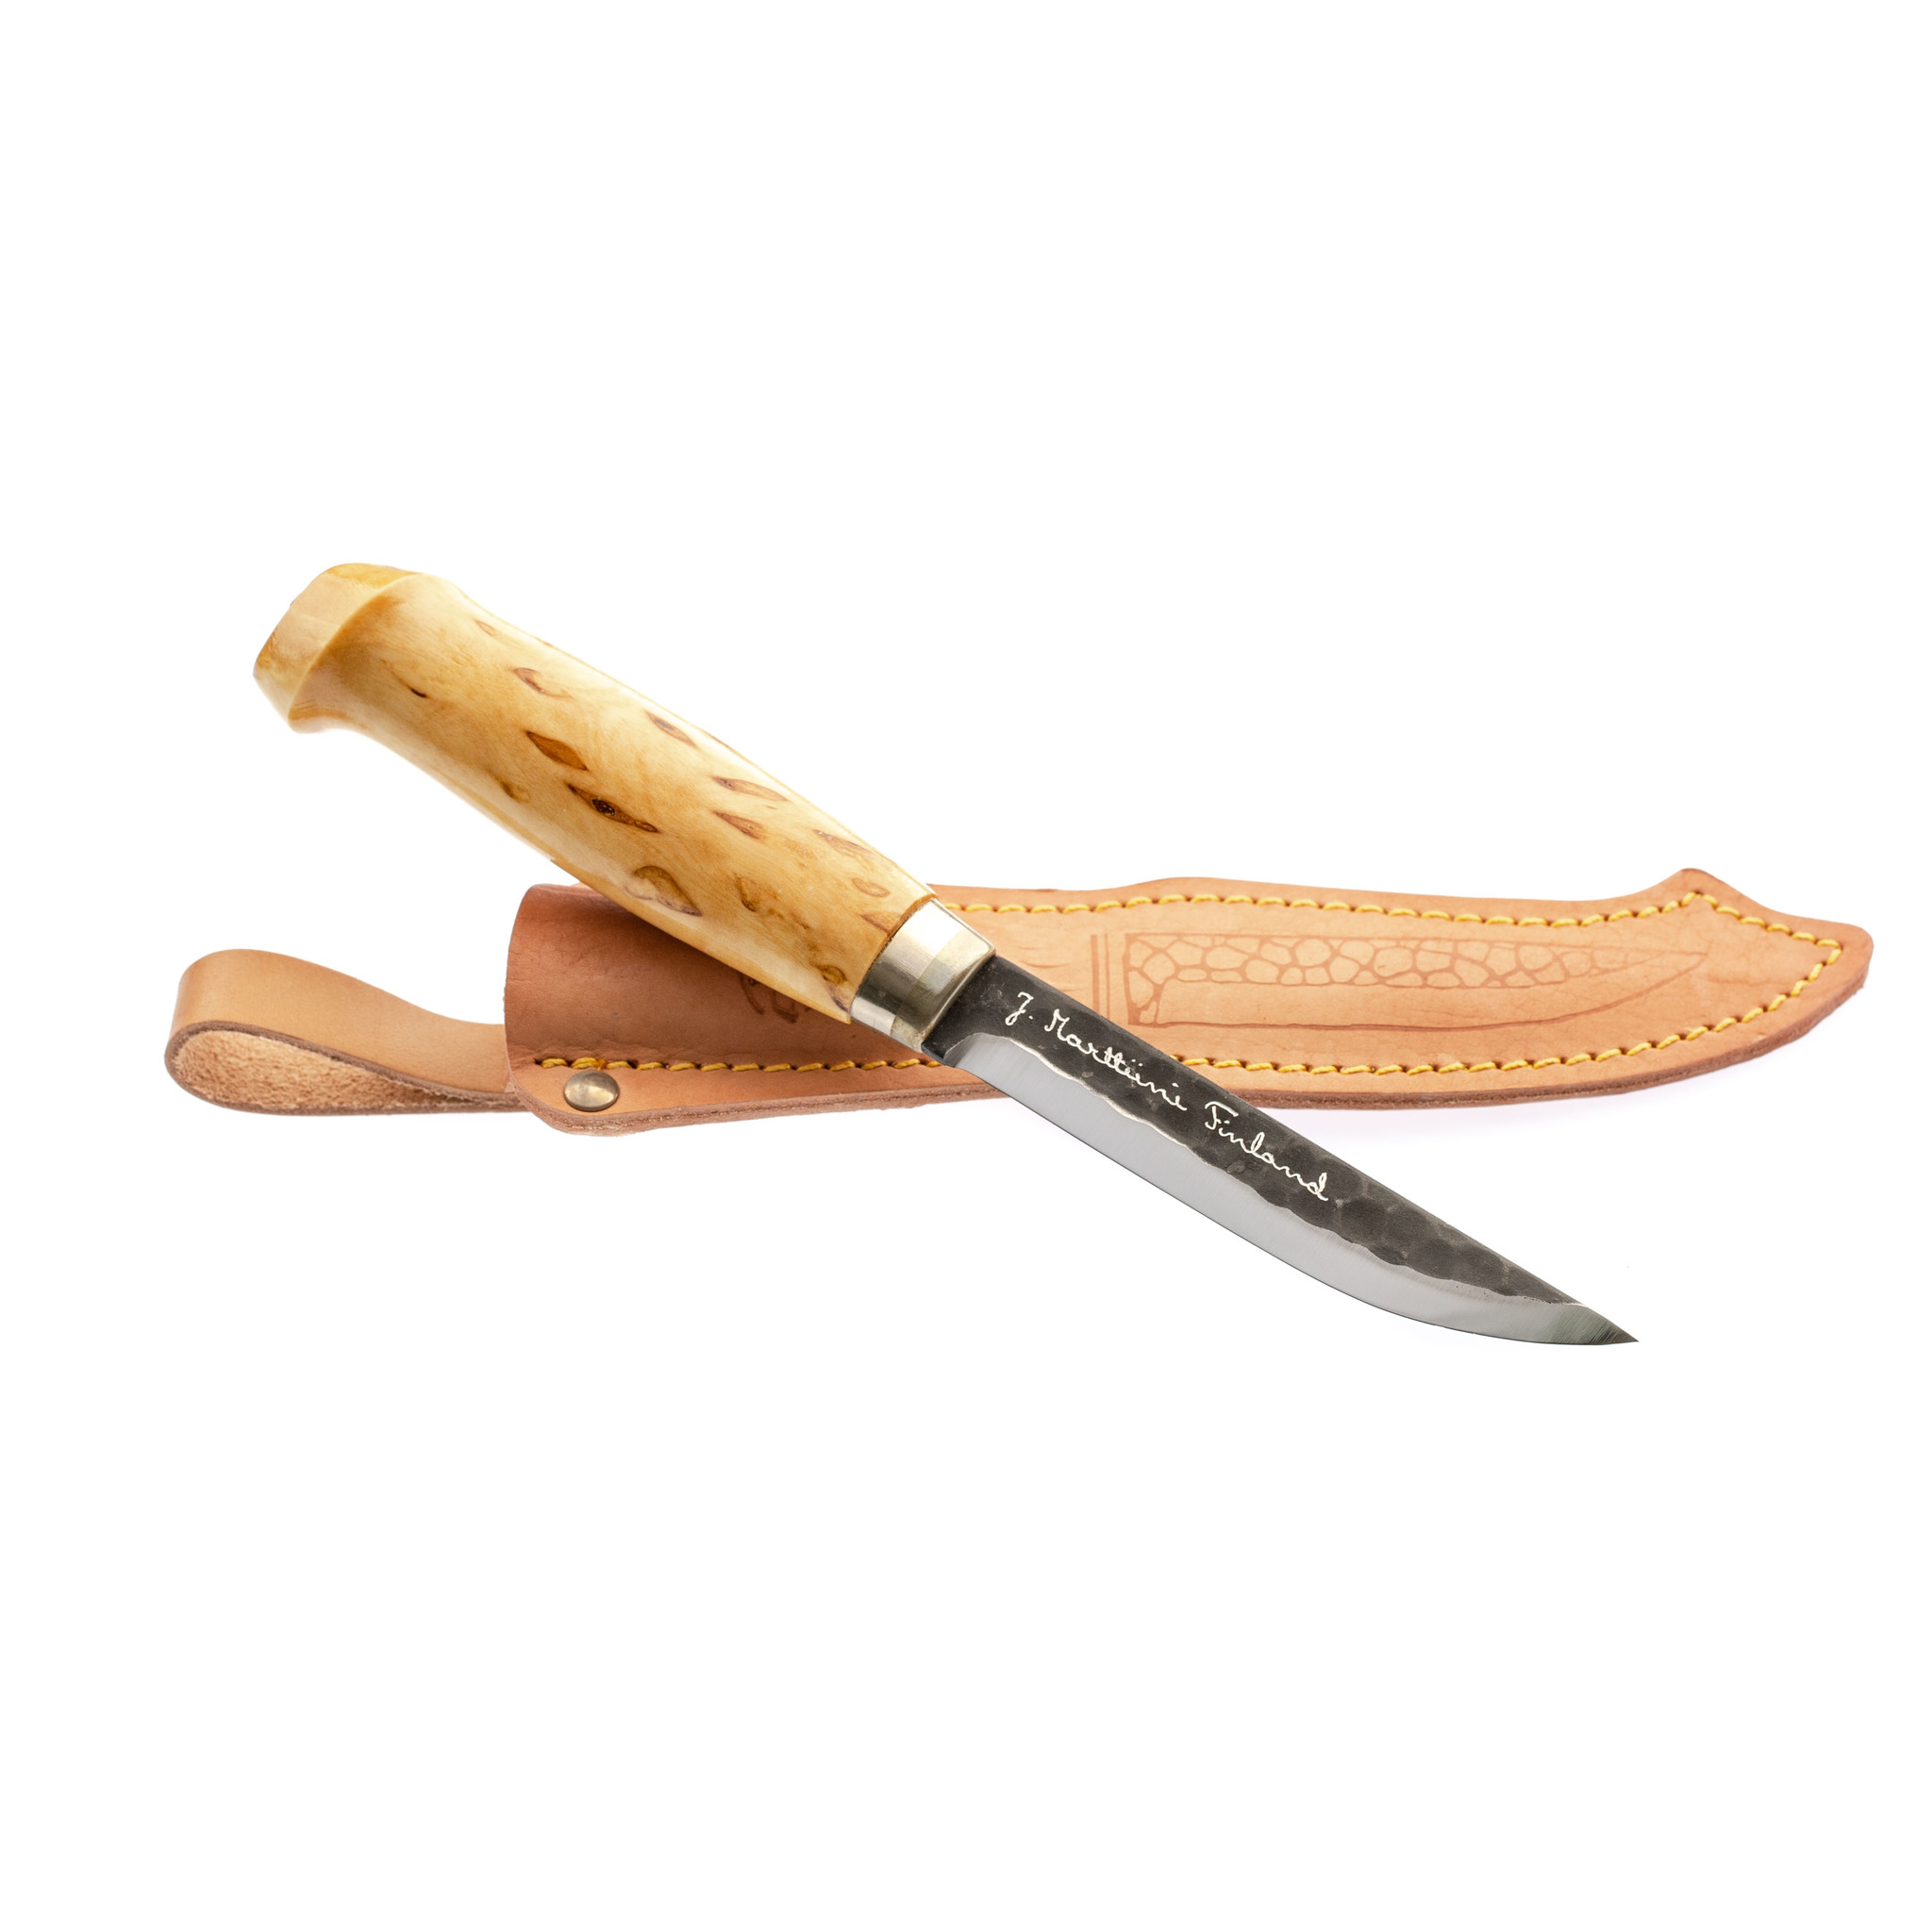 фото Нож финский marttiini lynx, сталь x75cr1, рукоять карельская береза